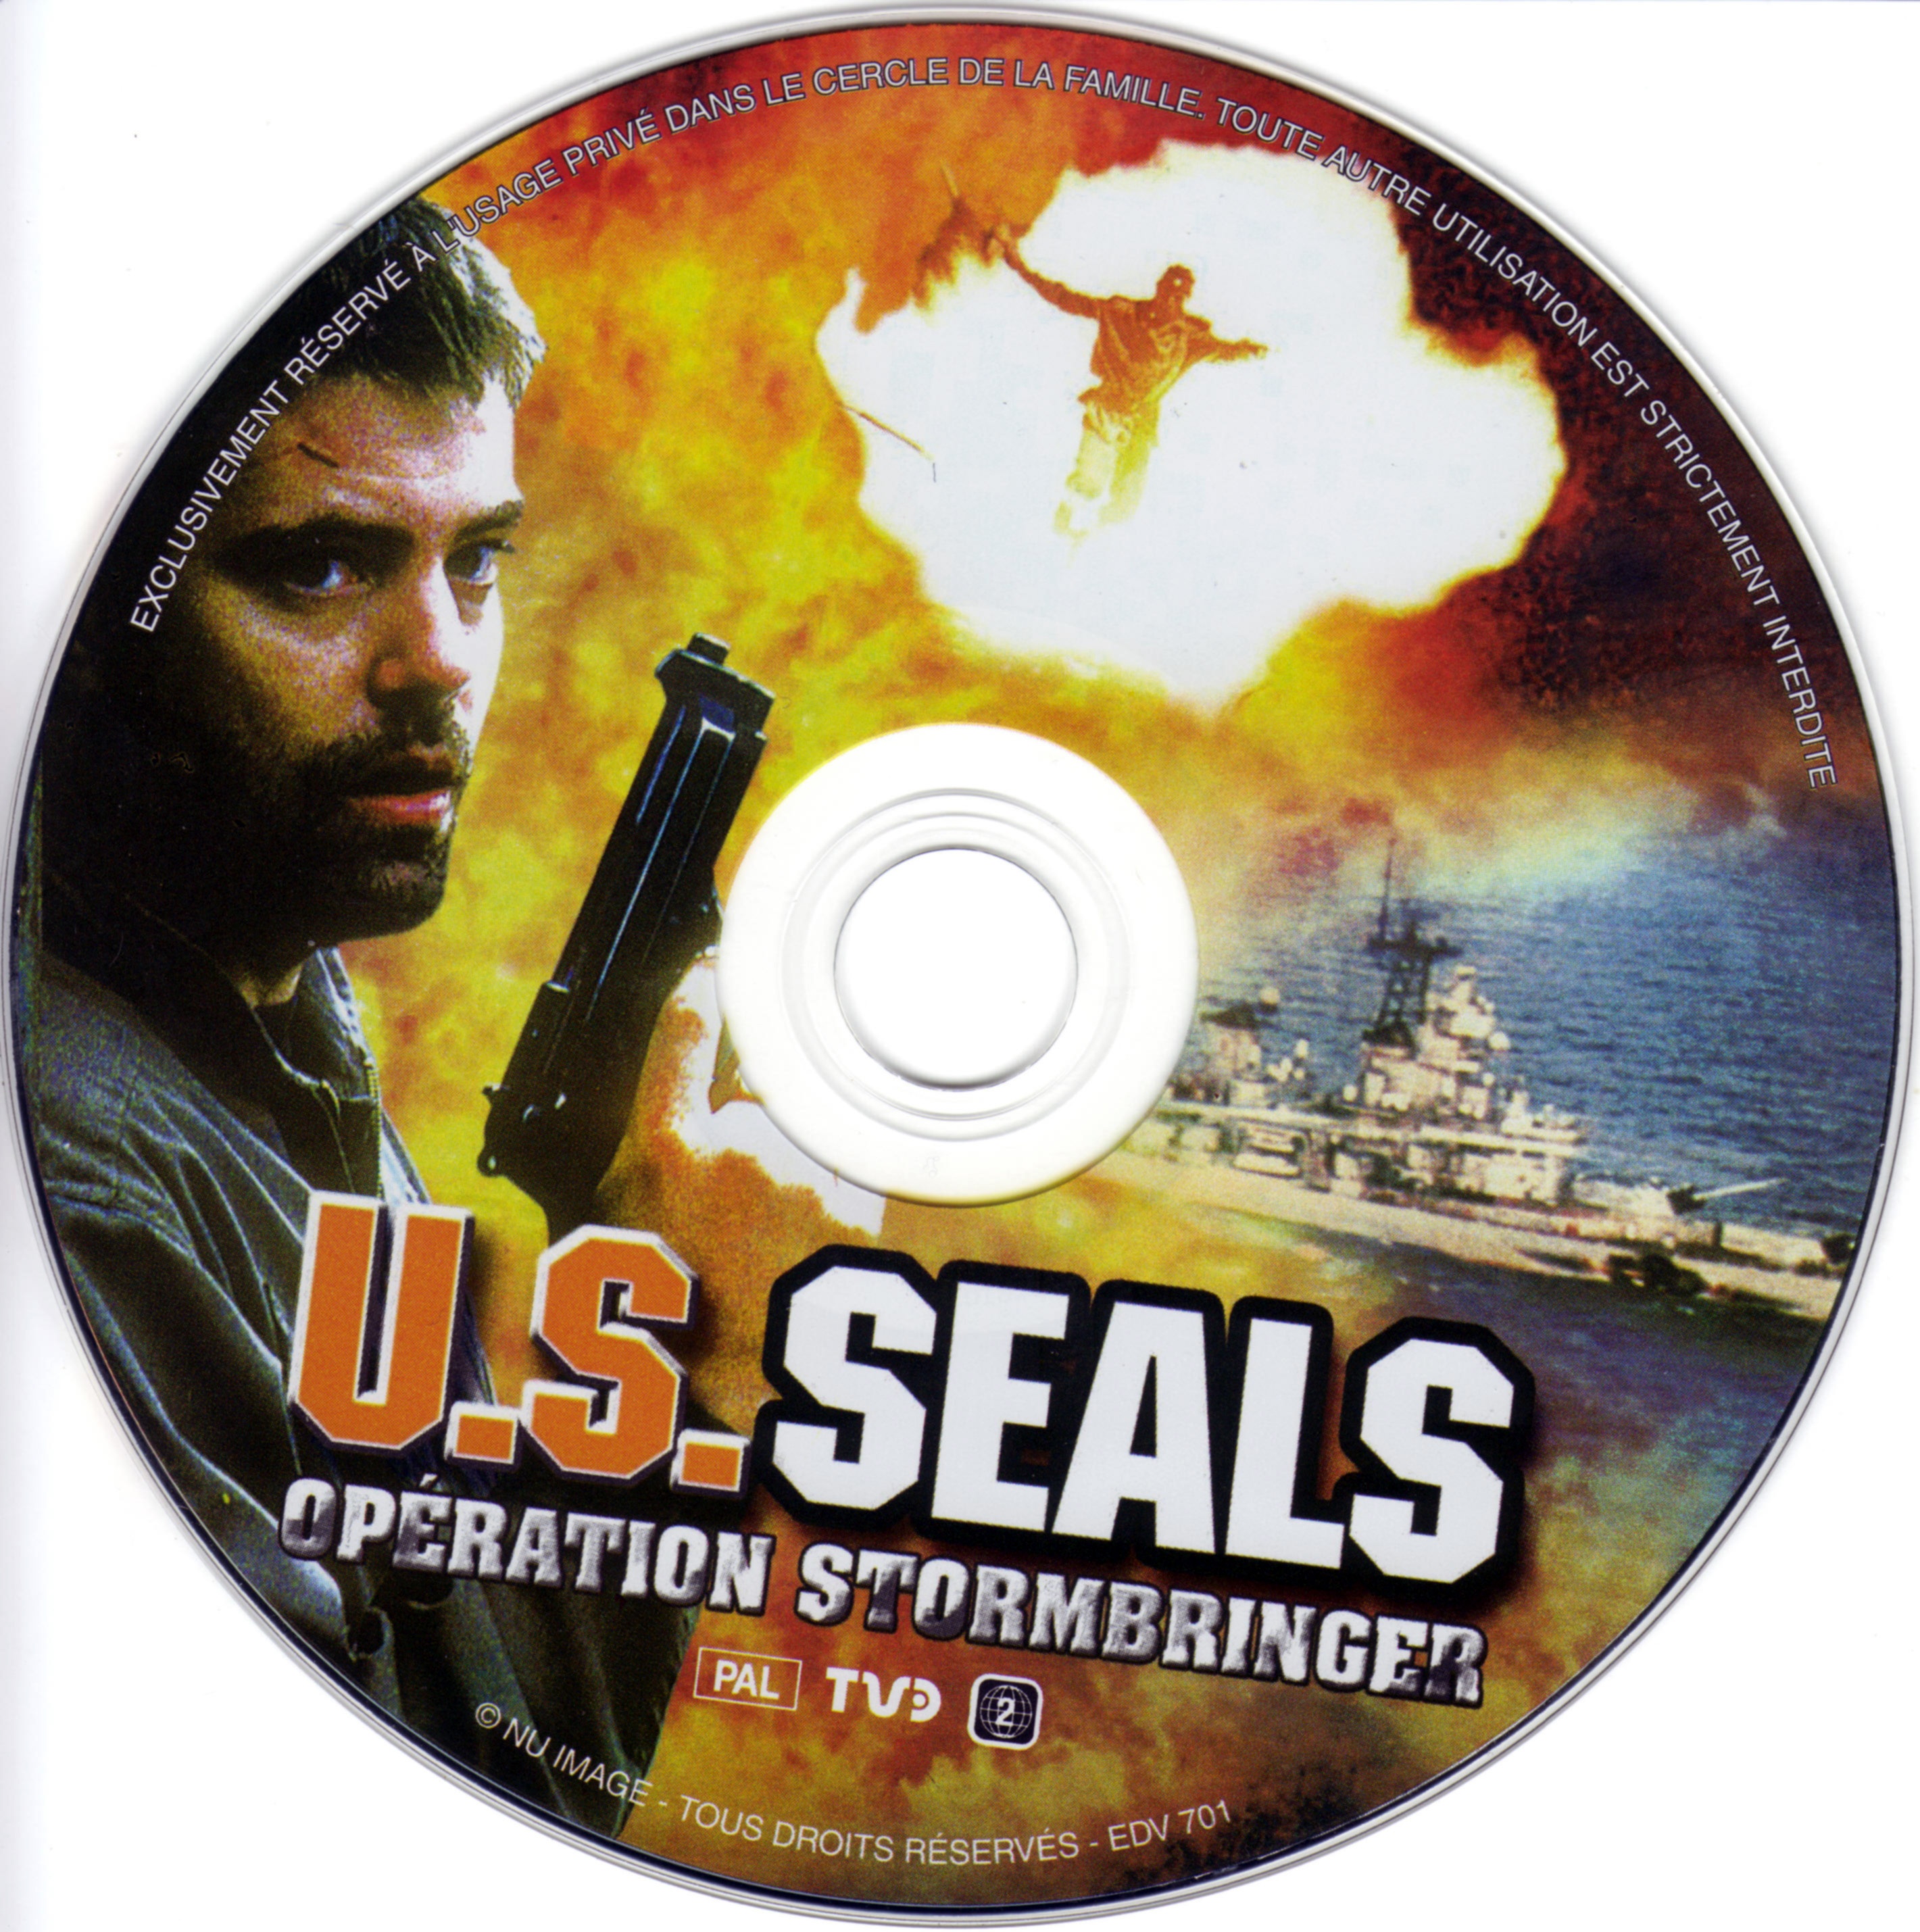 US Seals operation stormbringer